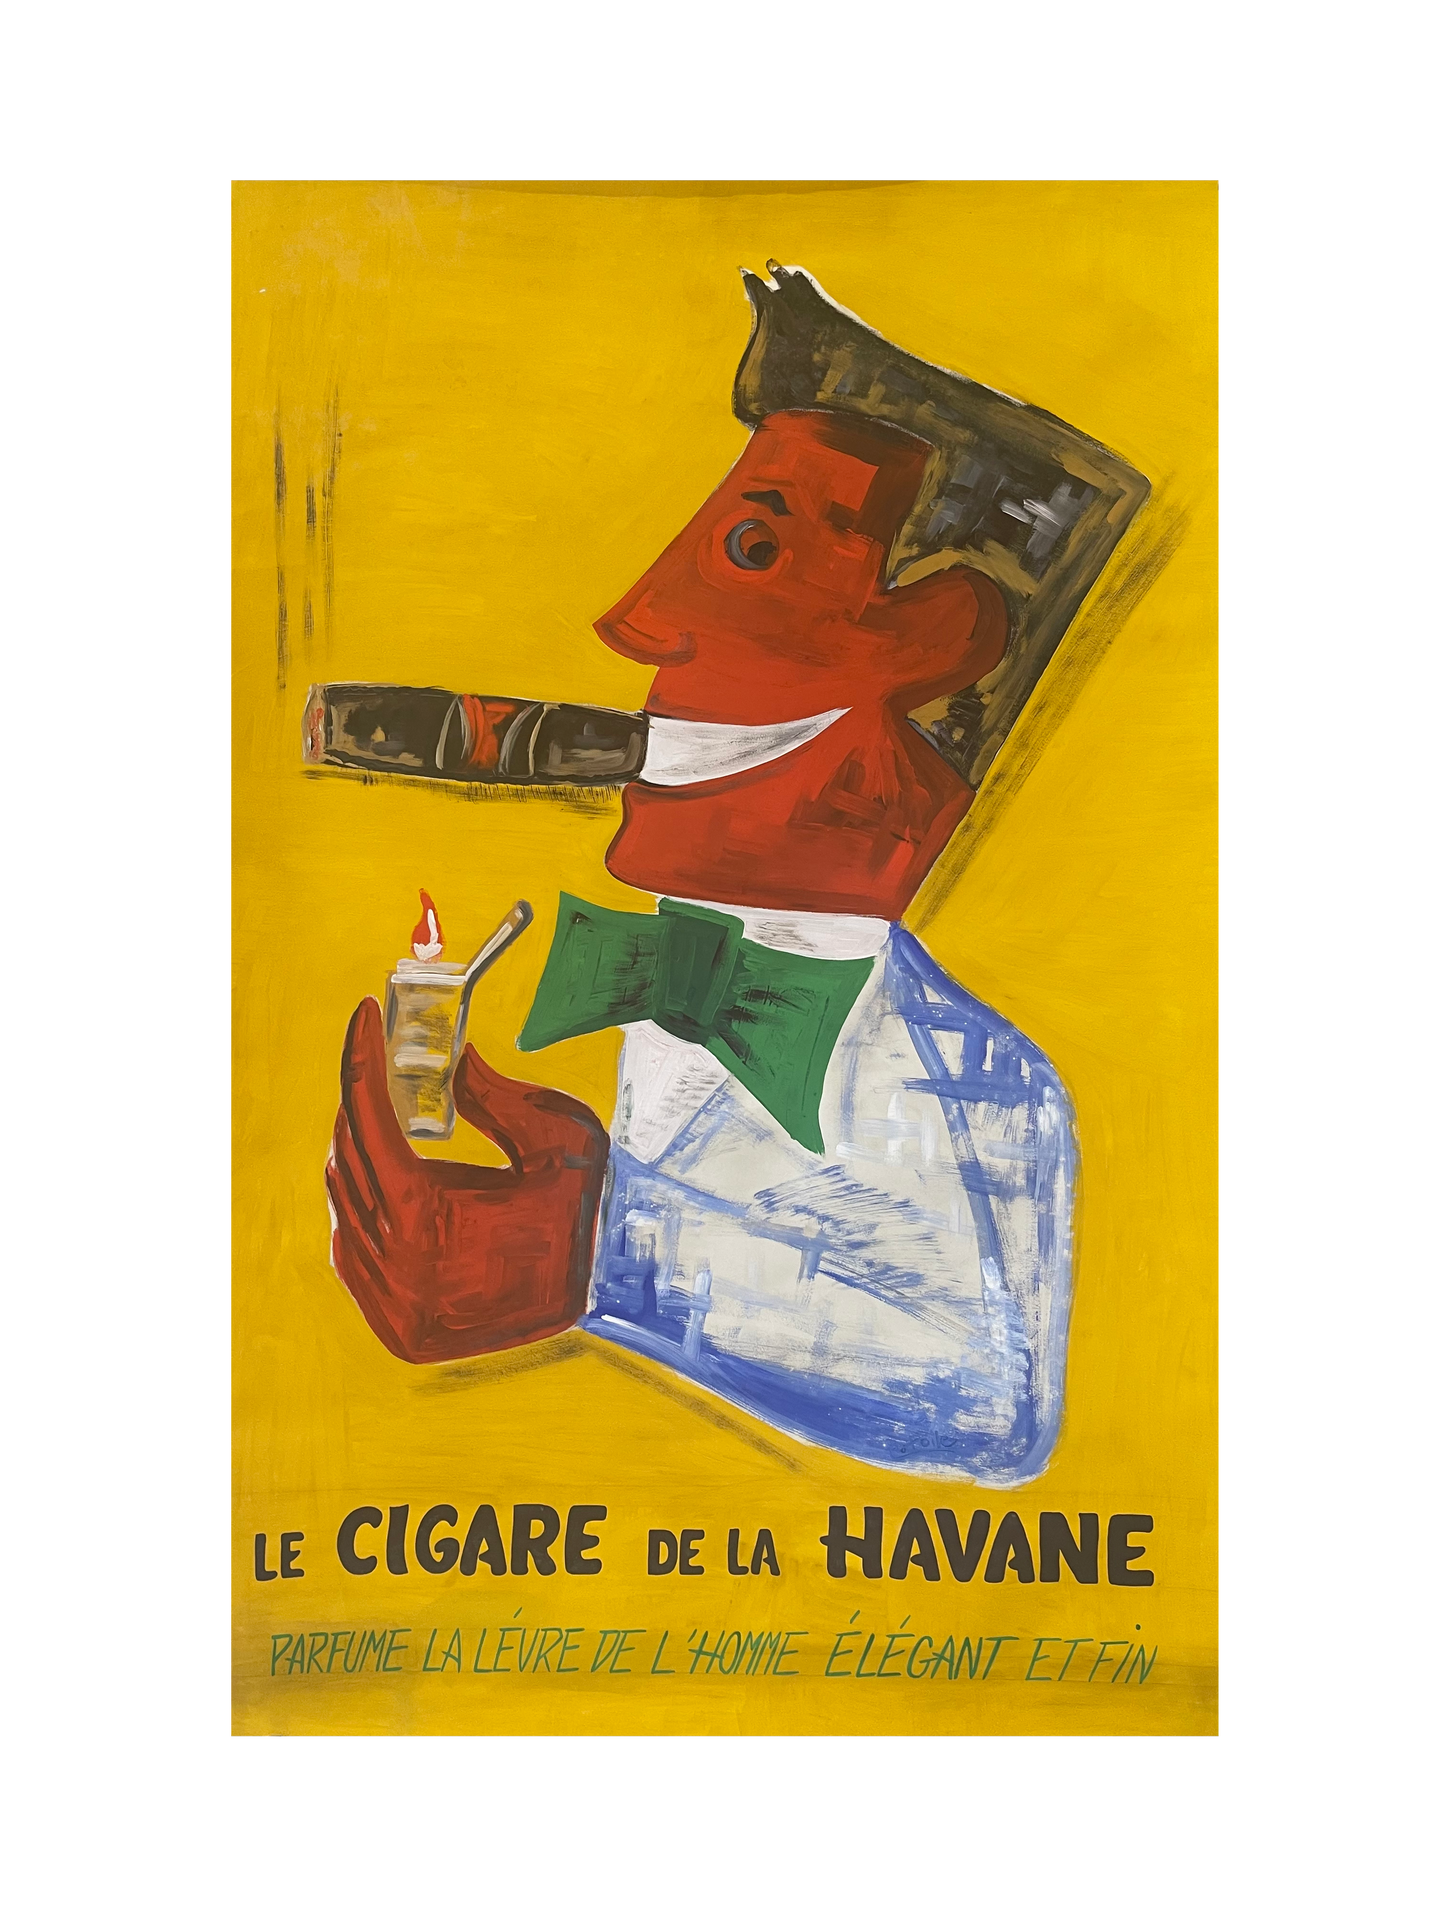 Le Cigare de la Havane by E. Poile